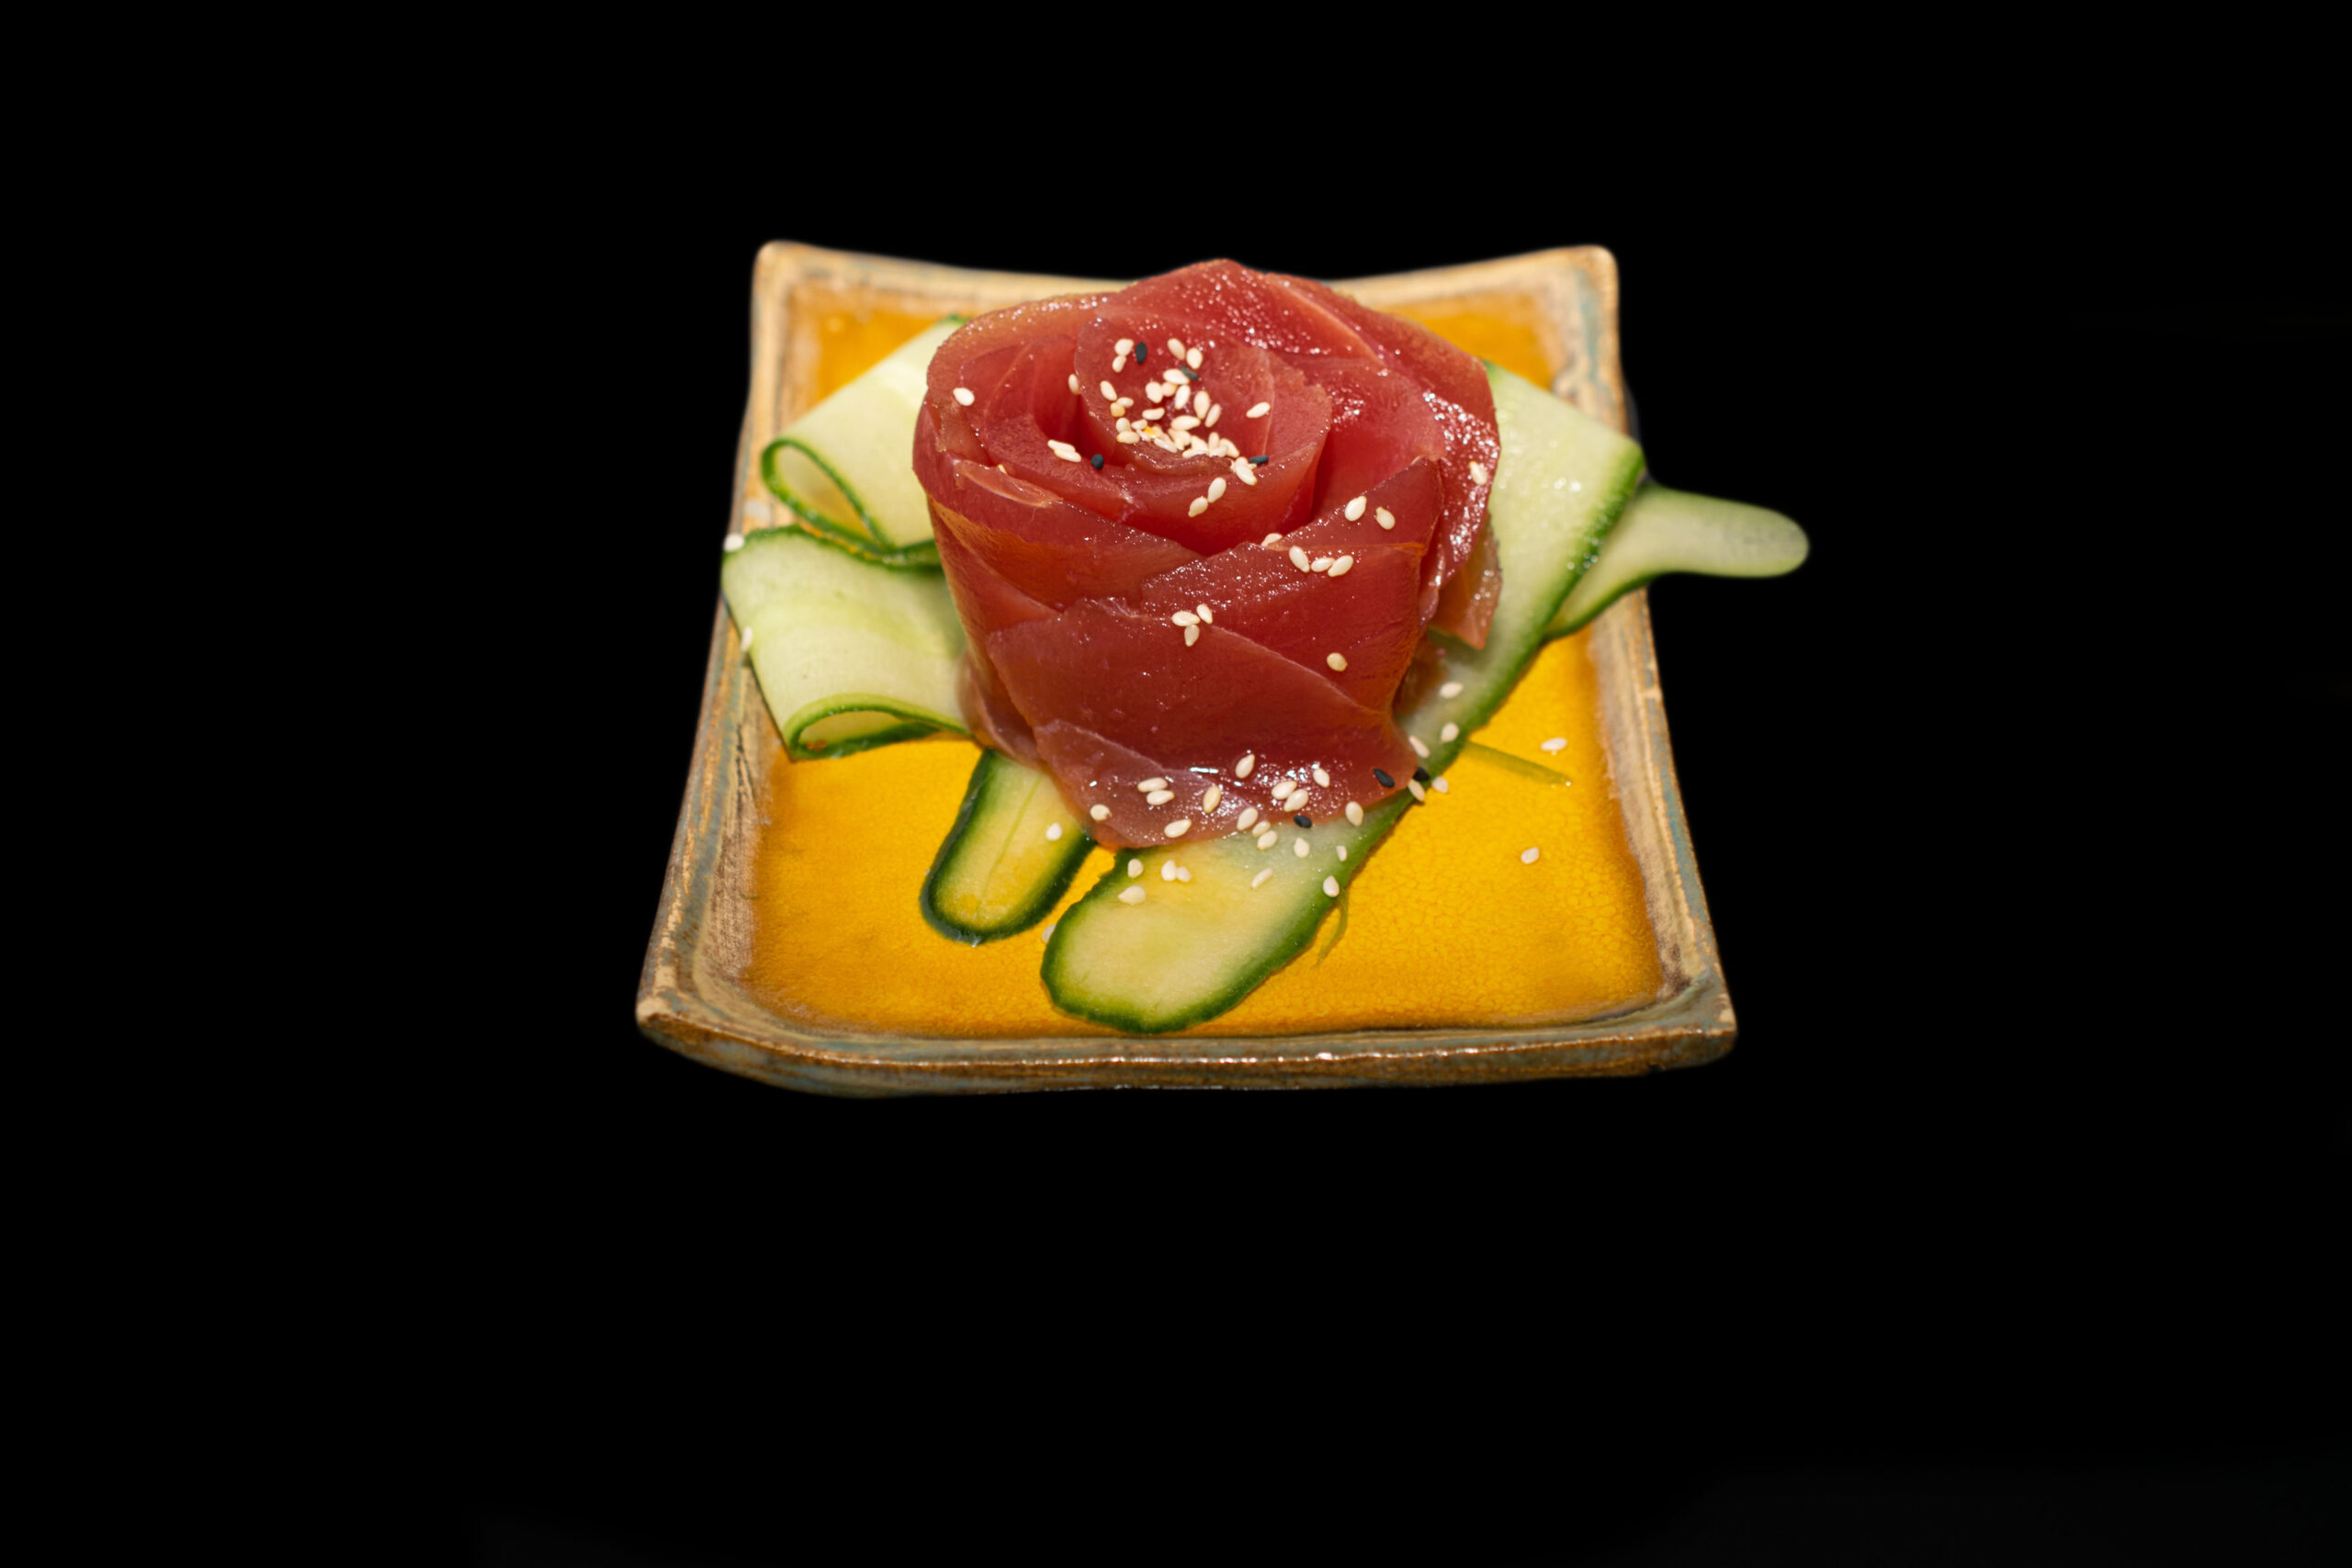 Sashimi tuńczyk